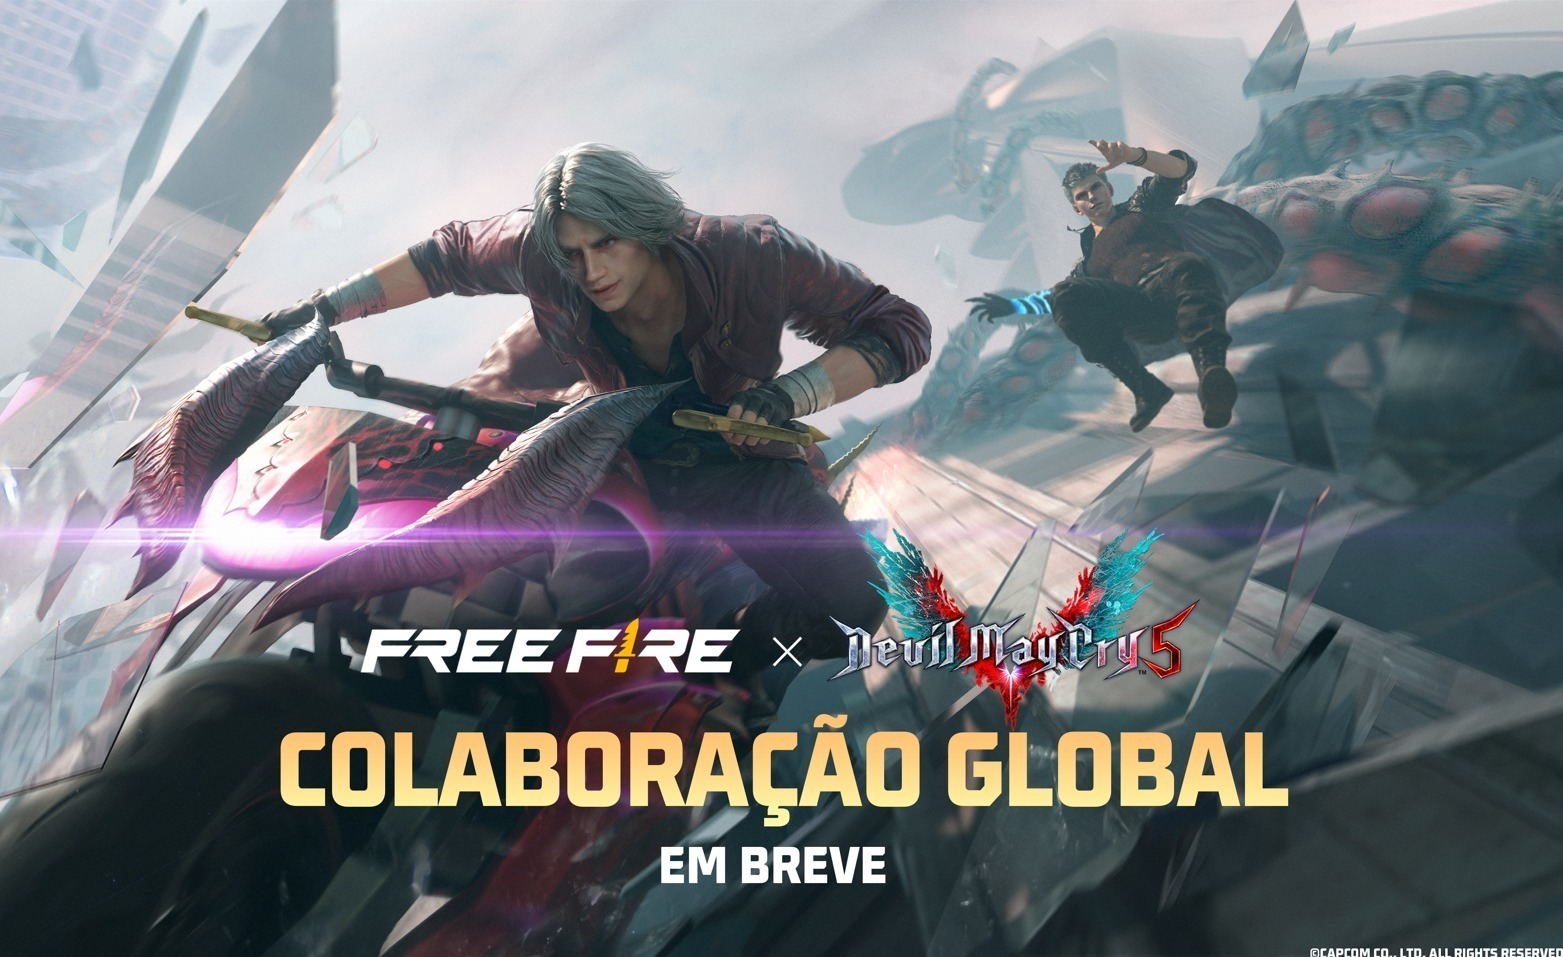 Free Fire anuncia colaboração global com Devil May Cry 5